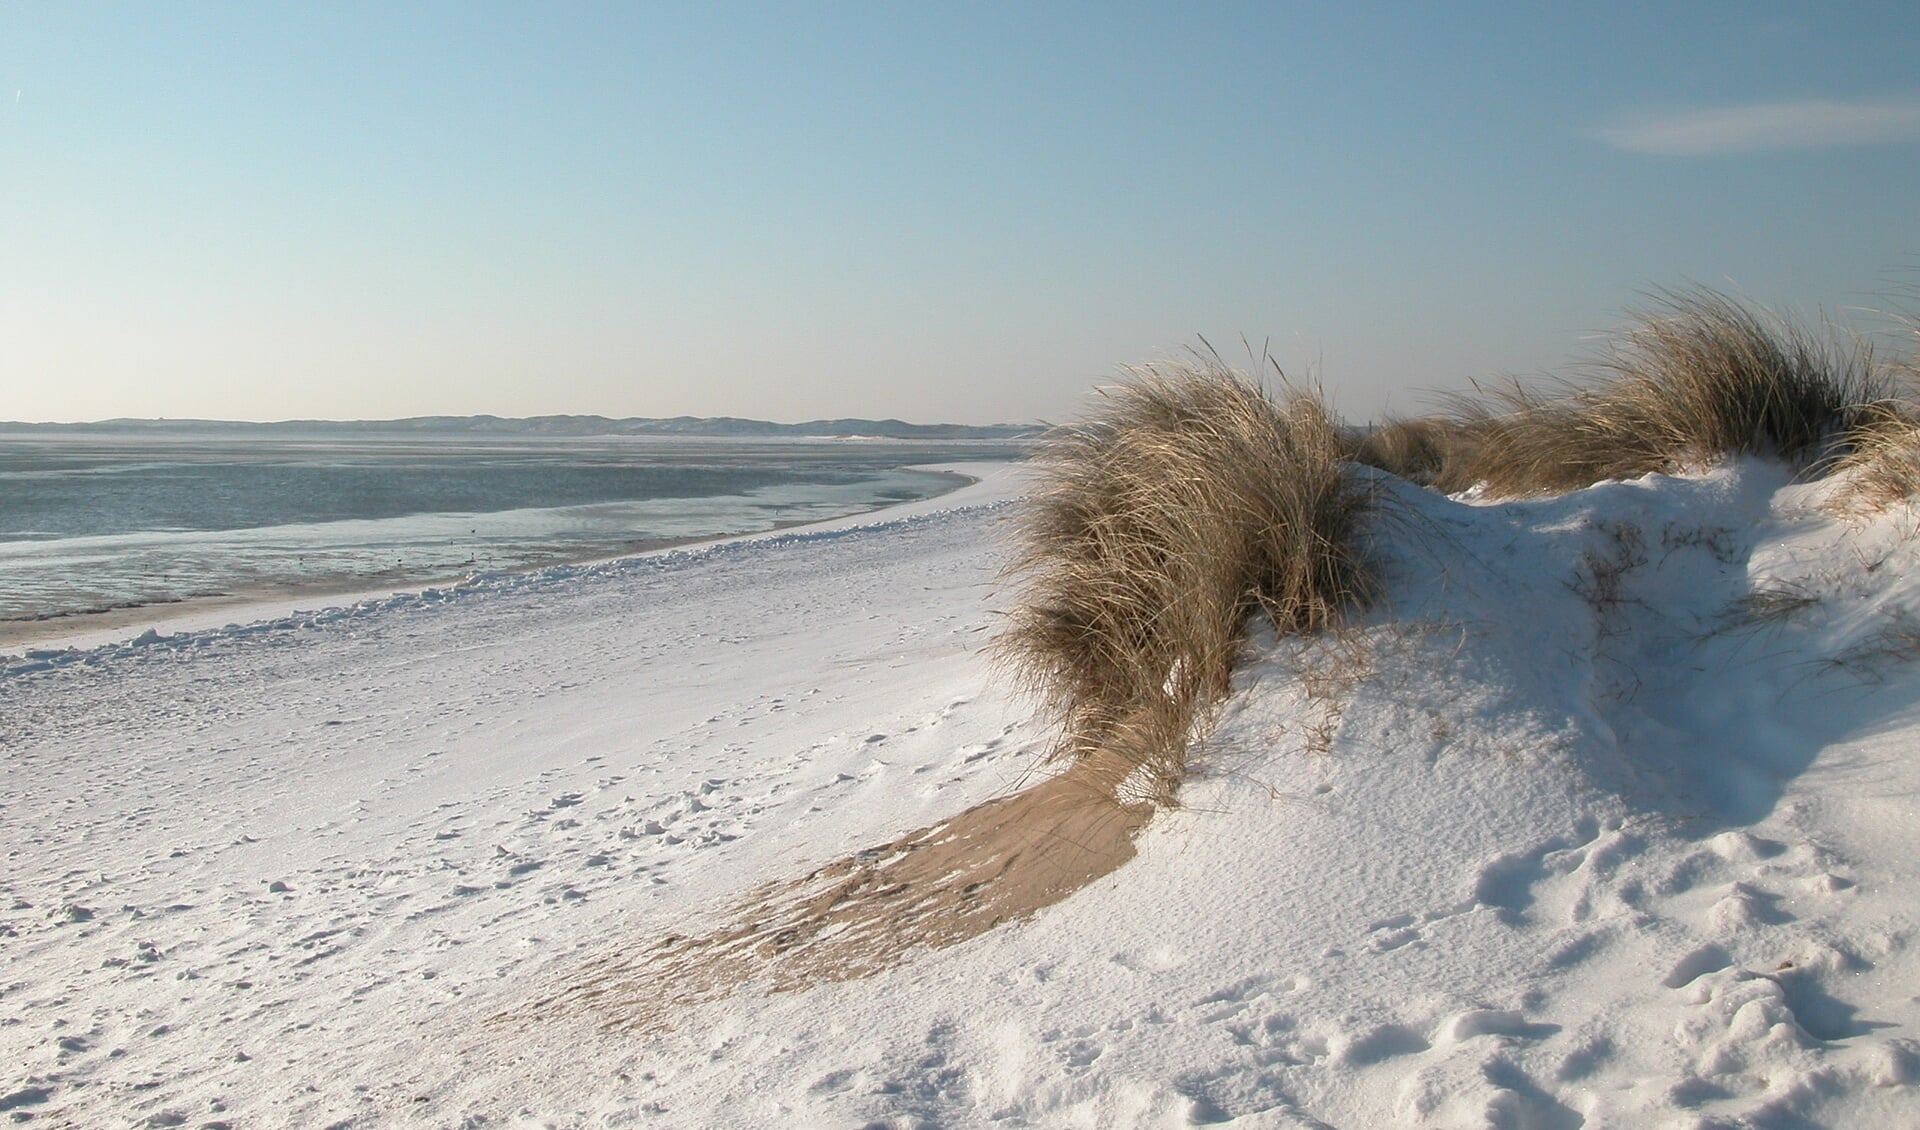 Een duik in de Noordzee op nieuwjaarsdag is inmiddels al jarenlang een traditie. Maar er ligt eigenlijk nooit sneeuw tijdens die dag, ook dit jaar niet.